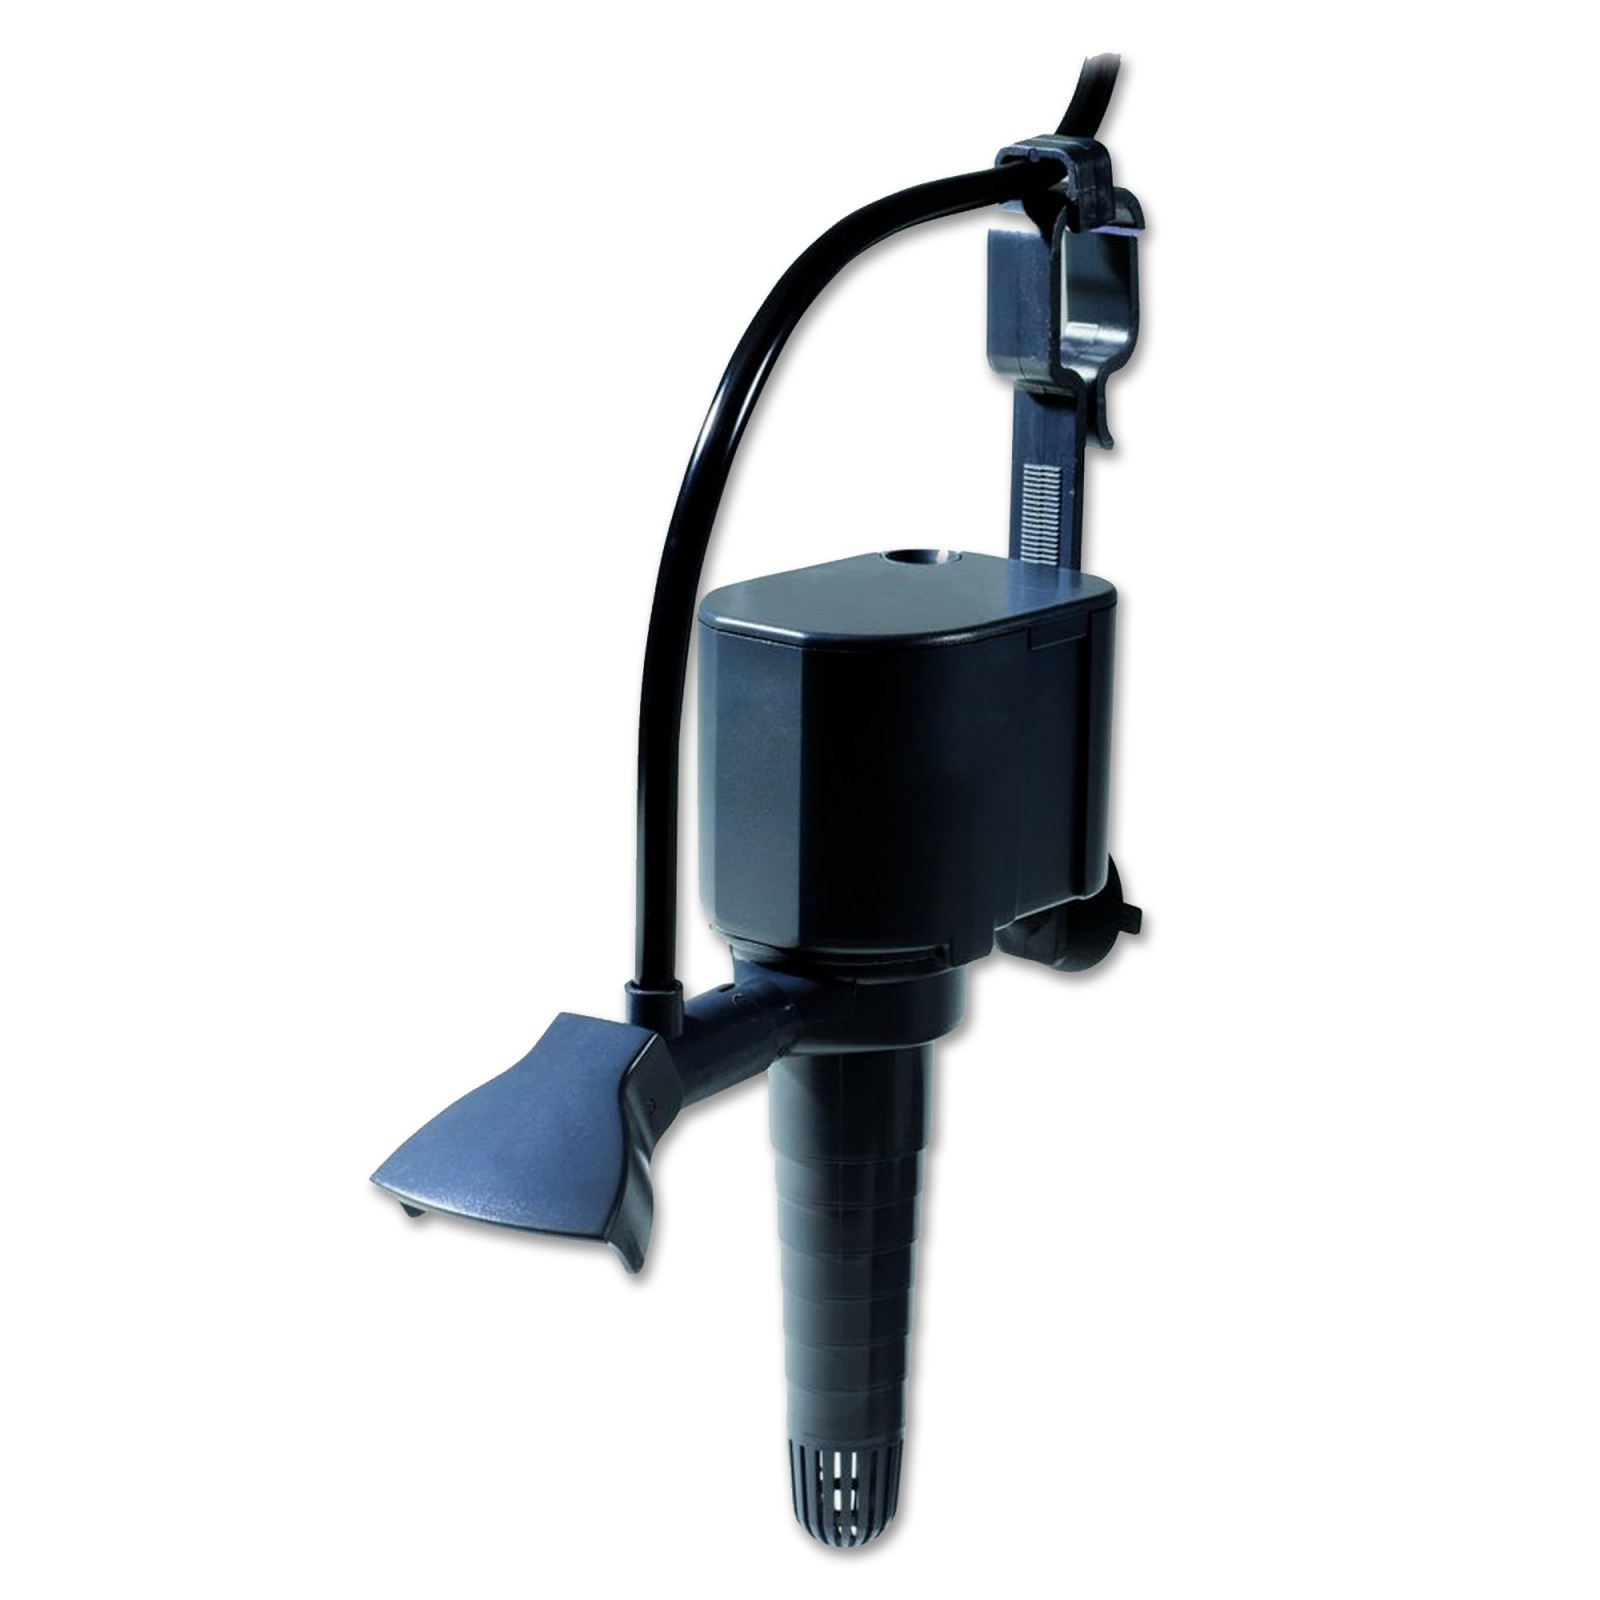 Newa Maxi Power Pompa MP PH 400 per acquario e filtri sottosabbia